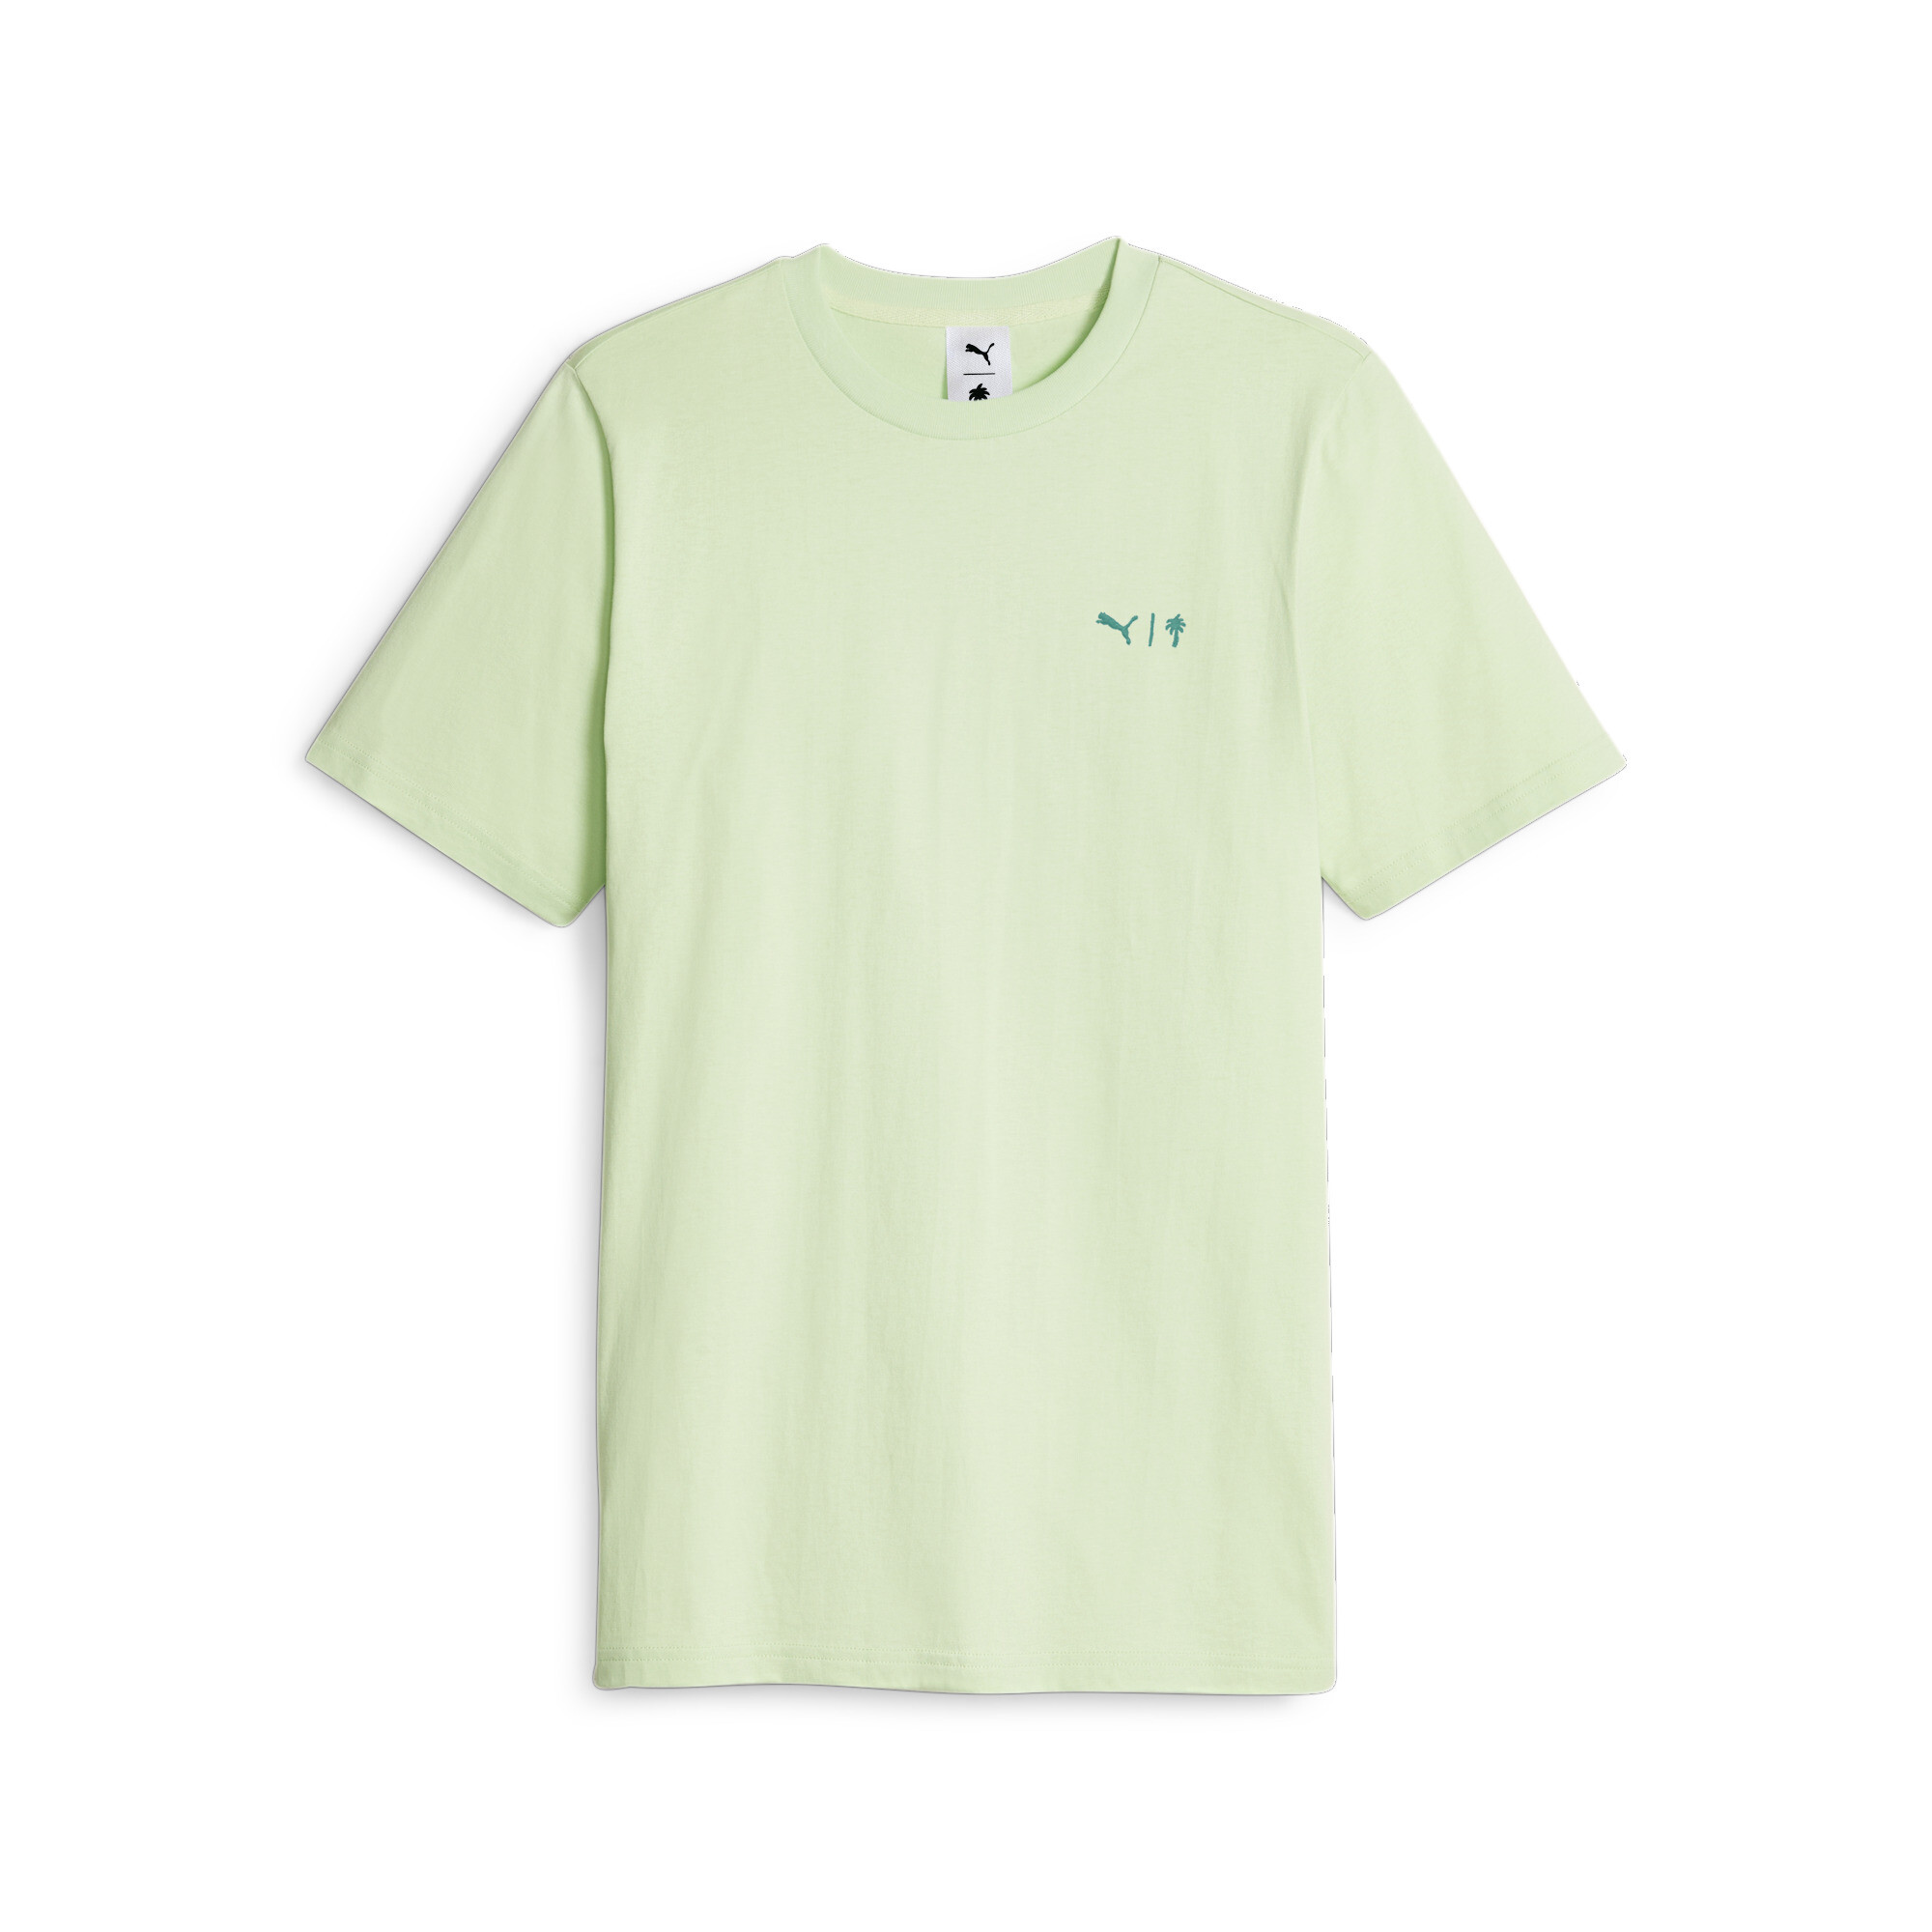 ＜プーマ公式通販＞ プーマ ユニセックス PUMA X PTC グラフィック Tシャツ ユニセックス Warm White ｜PUMA.com